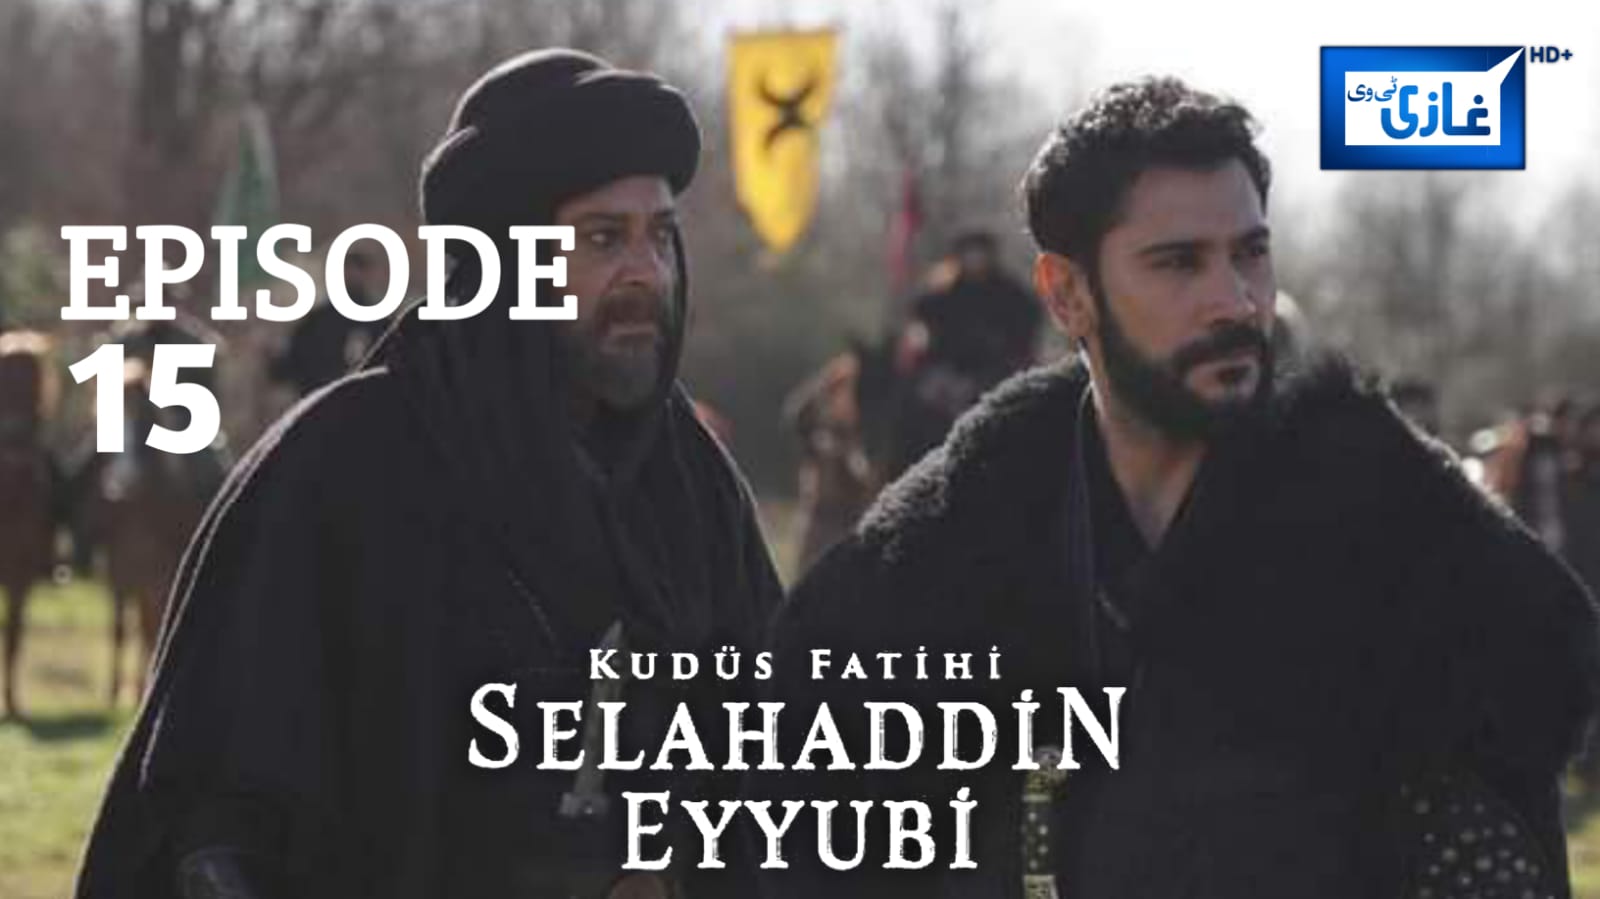 Salahuddin Ayubi Episode 15 in English Subtitles Free